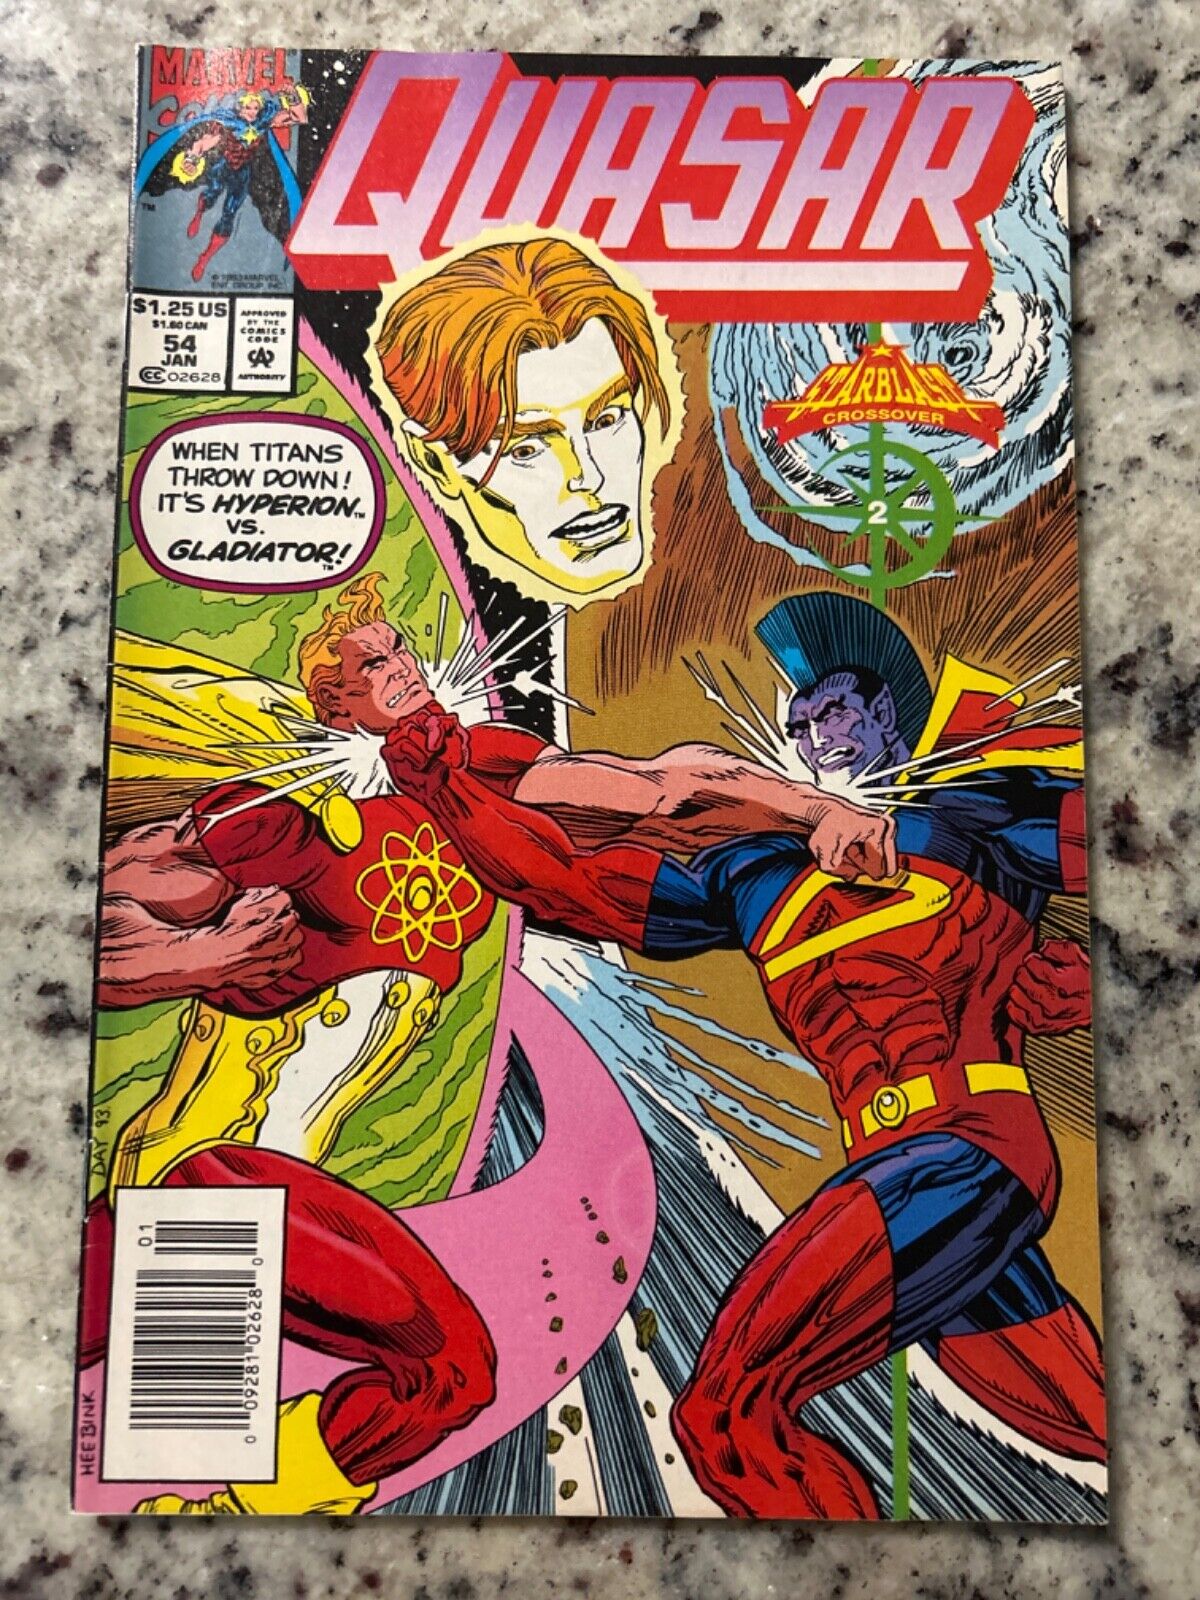 Quasar #54 Vol. 1 (Marvel, 1994) VF